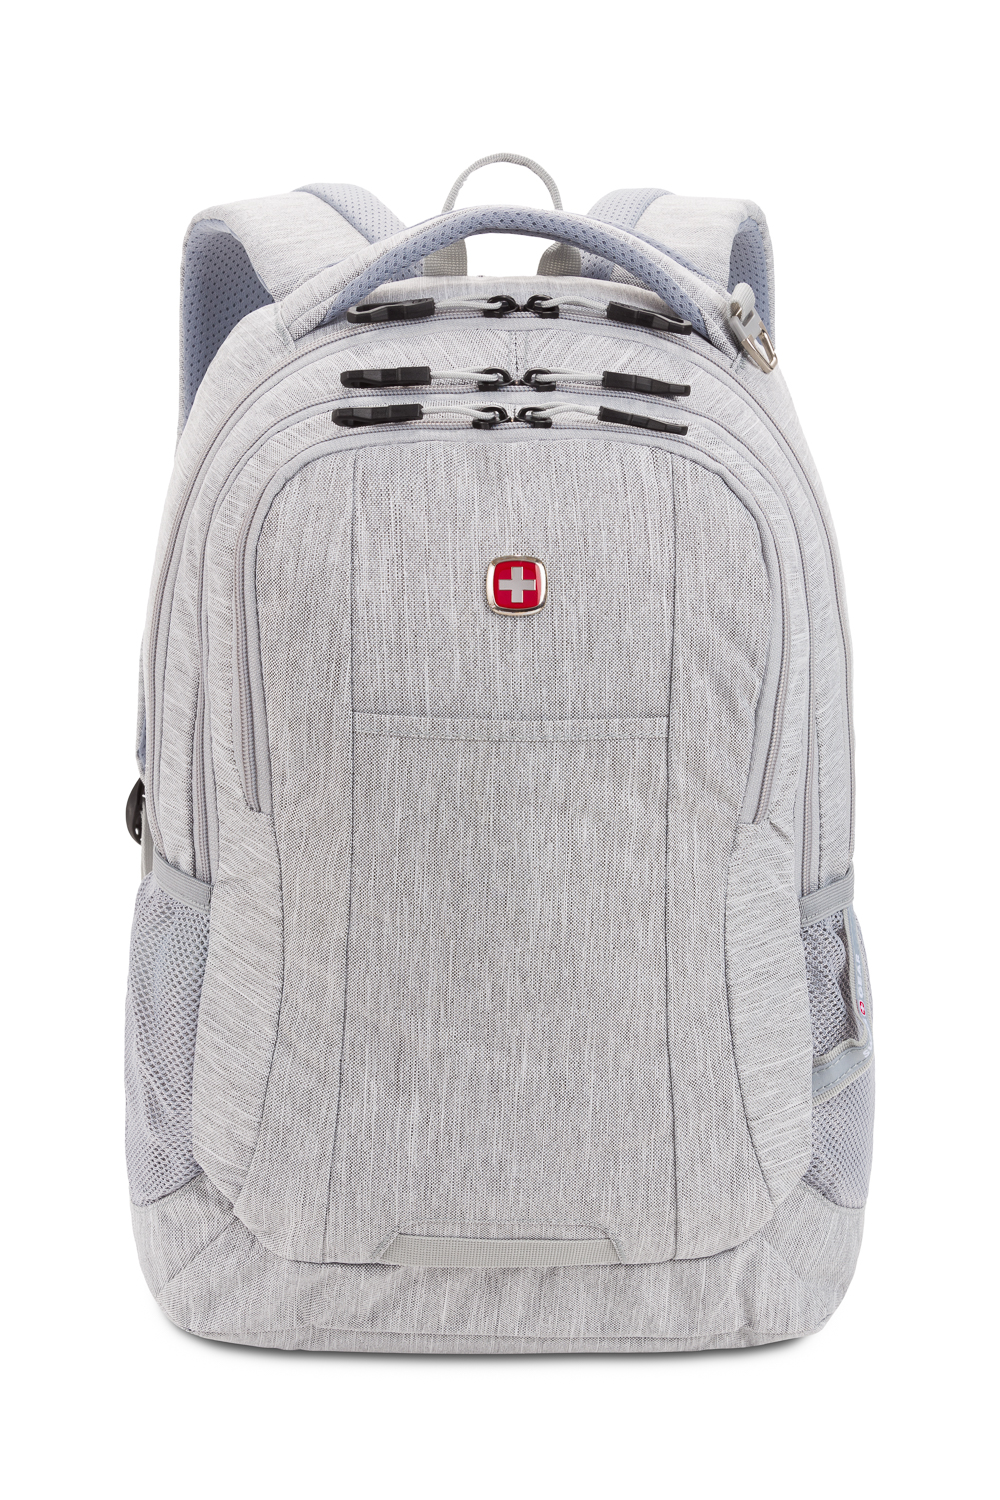 SwissGear 5505 Laptop Backpack - Light Grey Heather